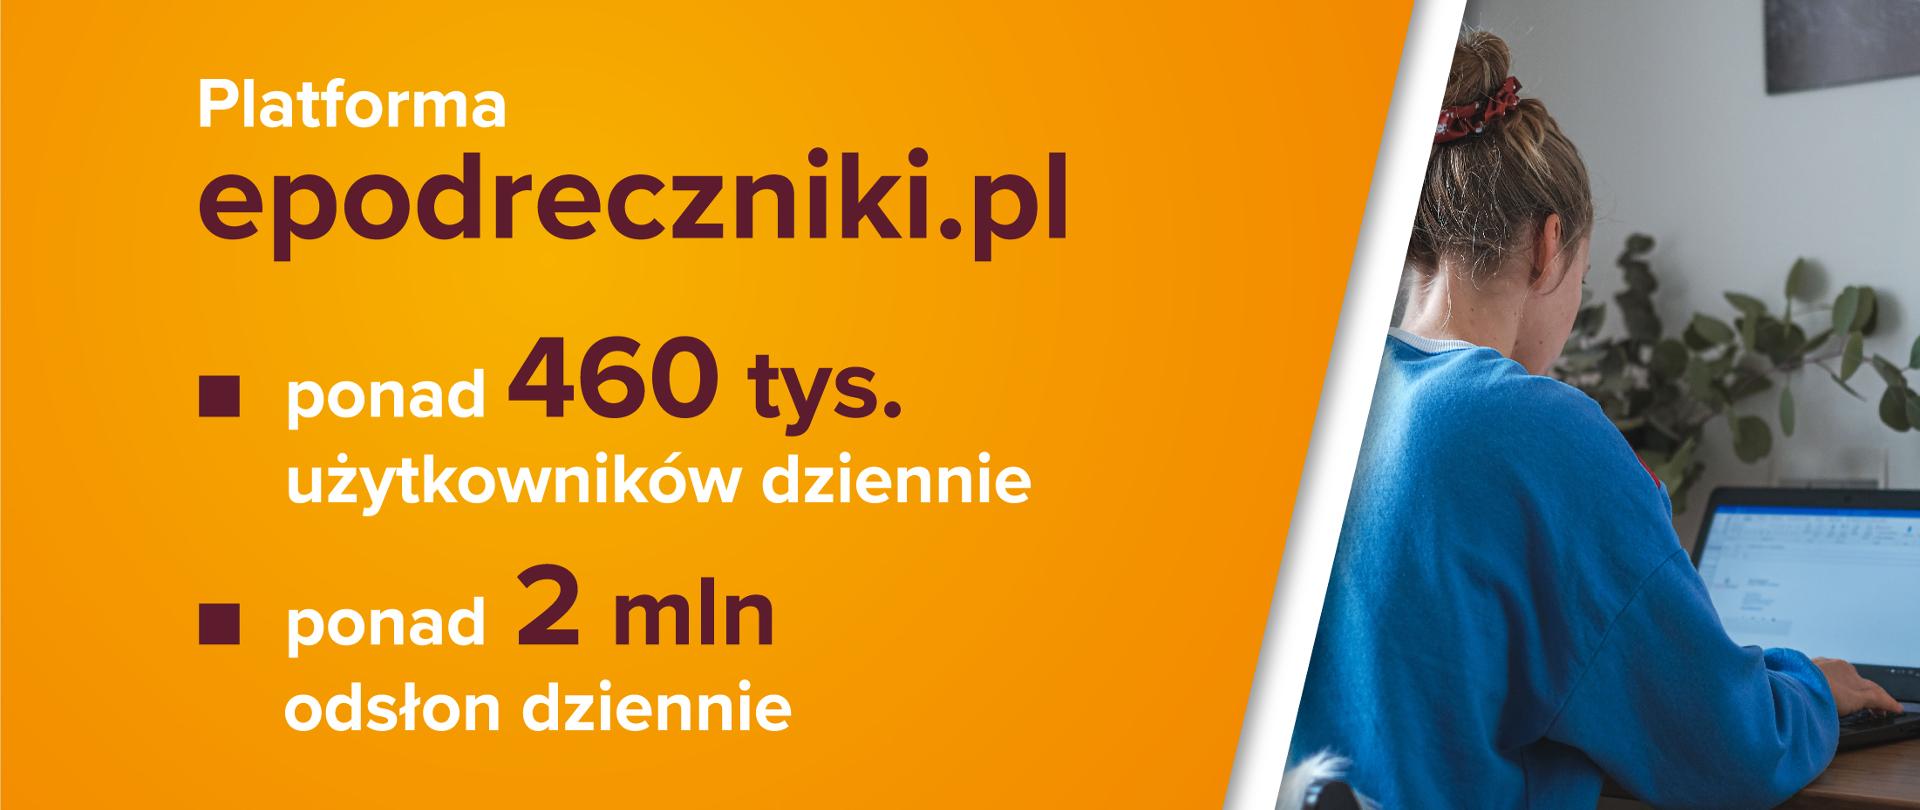 Dziewczyna siedząca przy laptopie po prawej stronie. Po lewo tekst na pomarańczowym tle:
Platforma epodreczniki.pl: ponad 460 tysięcy użytkowników dziennie, ponad 2 miliony odsłon dziennie.